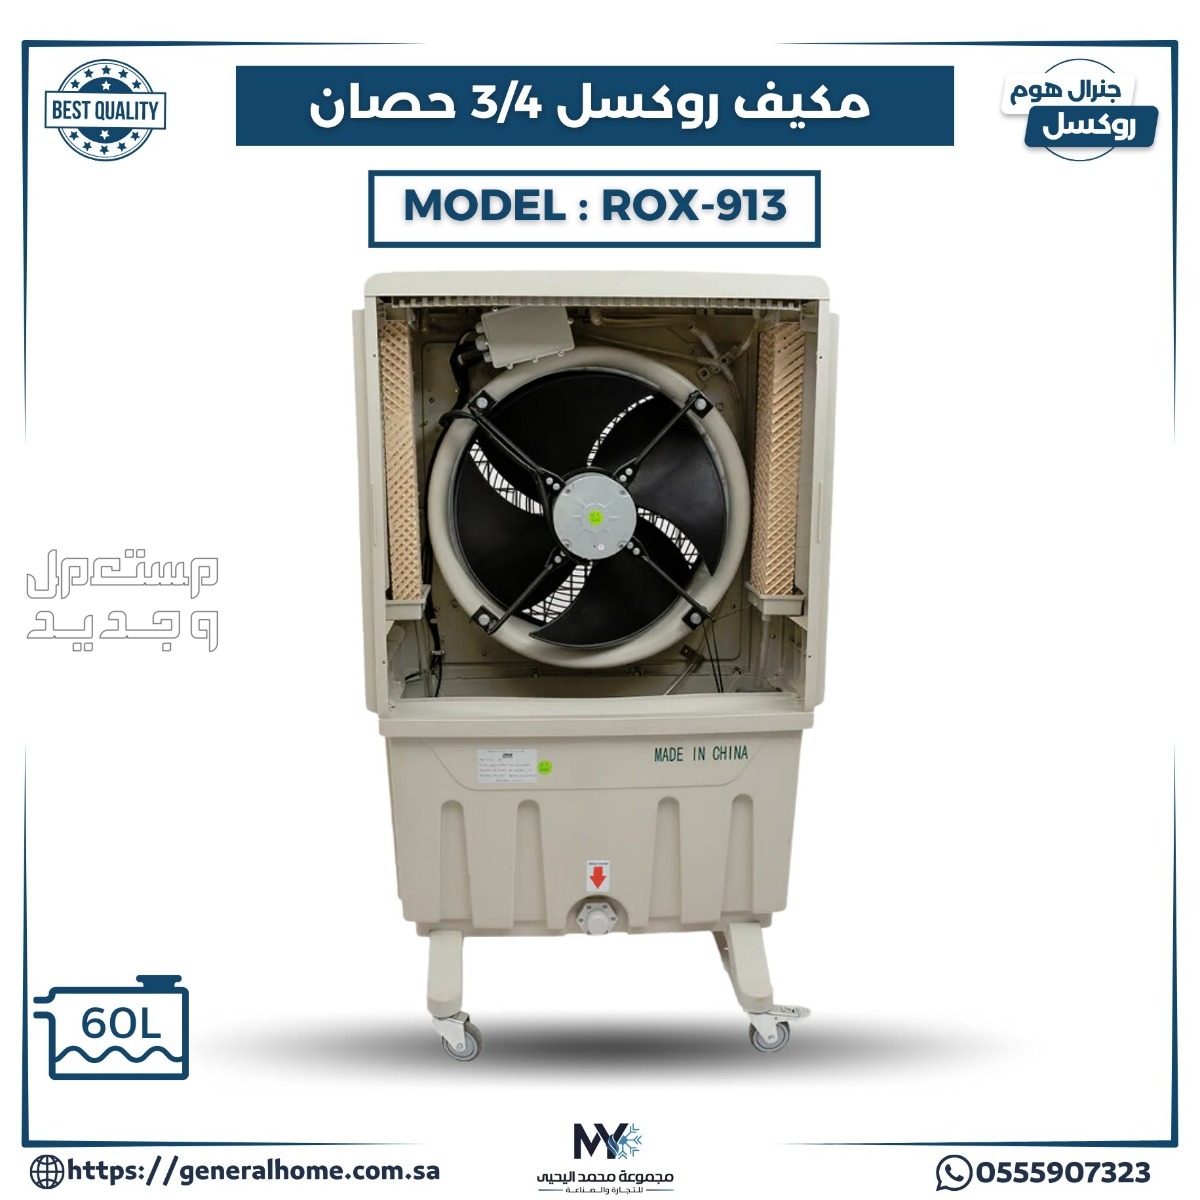 عروض اليحيى للمكيفات بالأنواع والمواصفات والصور والأسعار في الإمارات العربية المتحدة مكيف روكسل 3/4 حصان موديل ROX-913